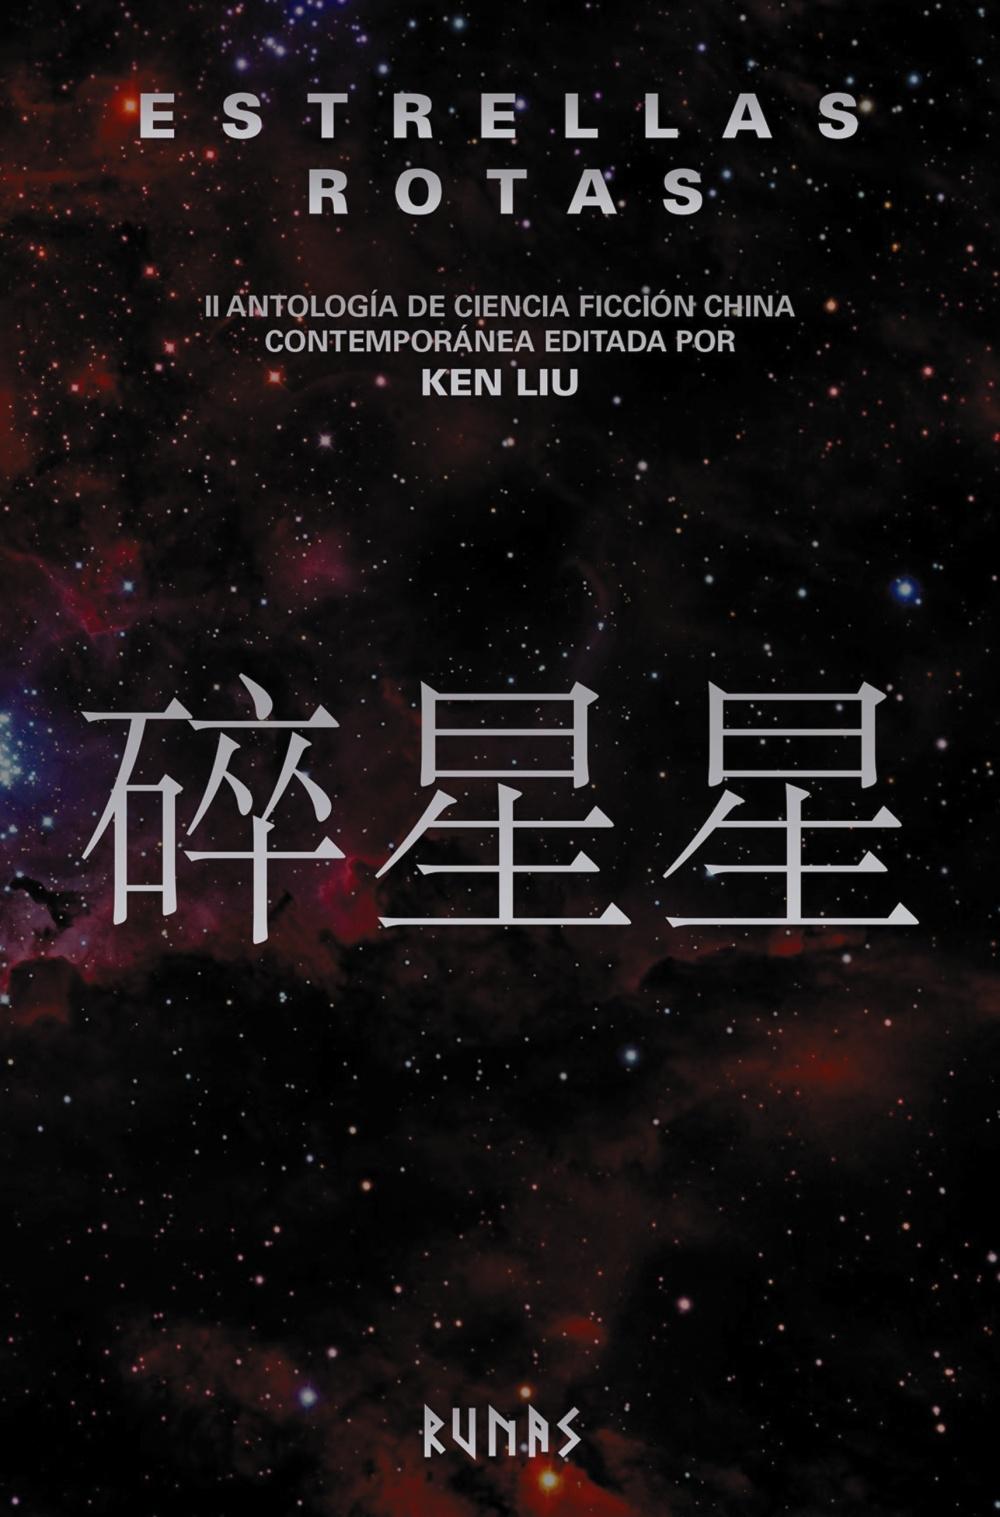 Estrellas rotas "II antología de ciencia ficción china contemporánea editada por Ken Liu"